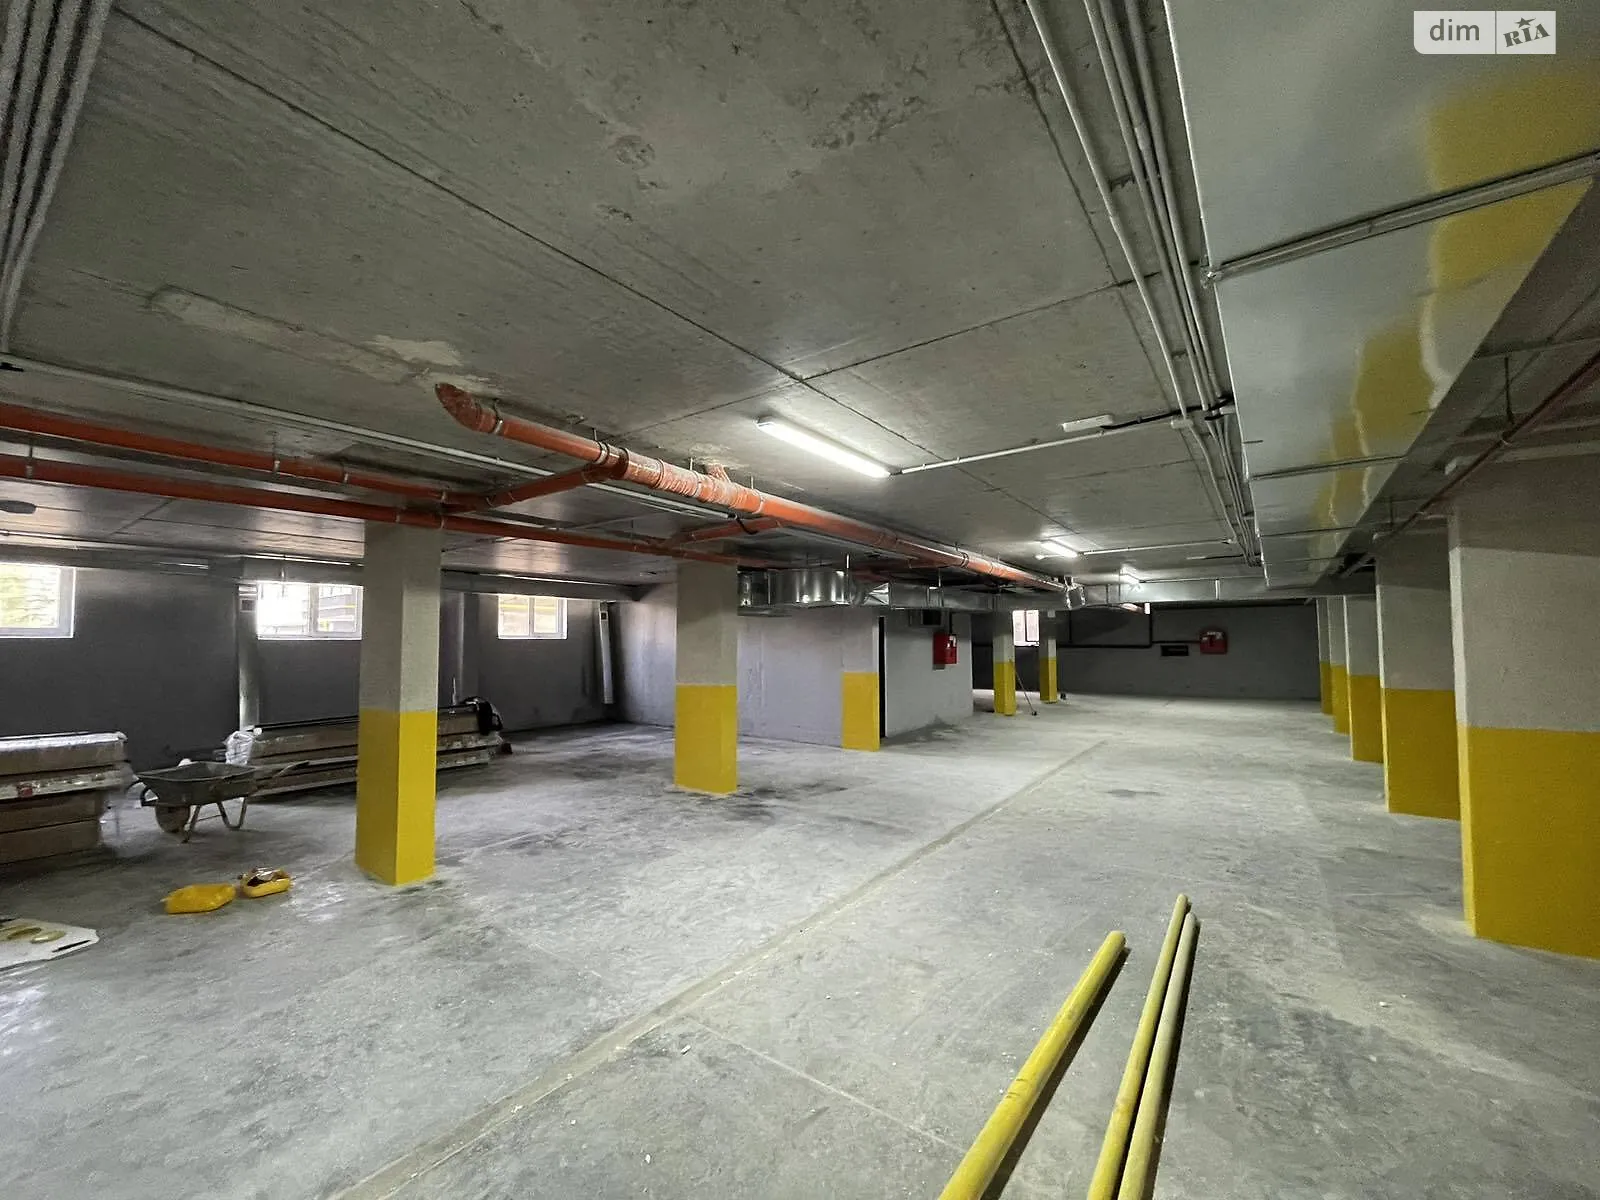 Продается подземный паркинг универсальный на 18 кв. м, цена: 432000 грн - фото 1